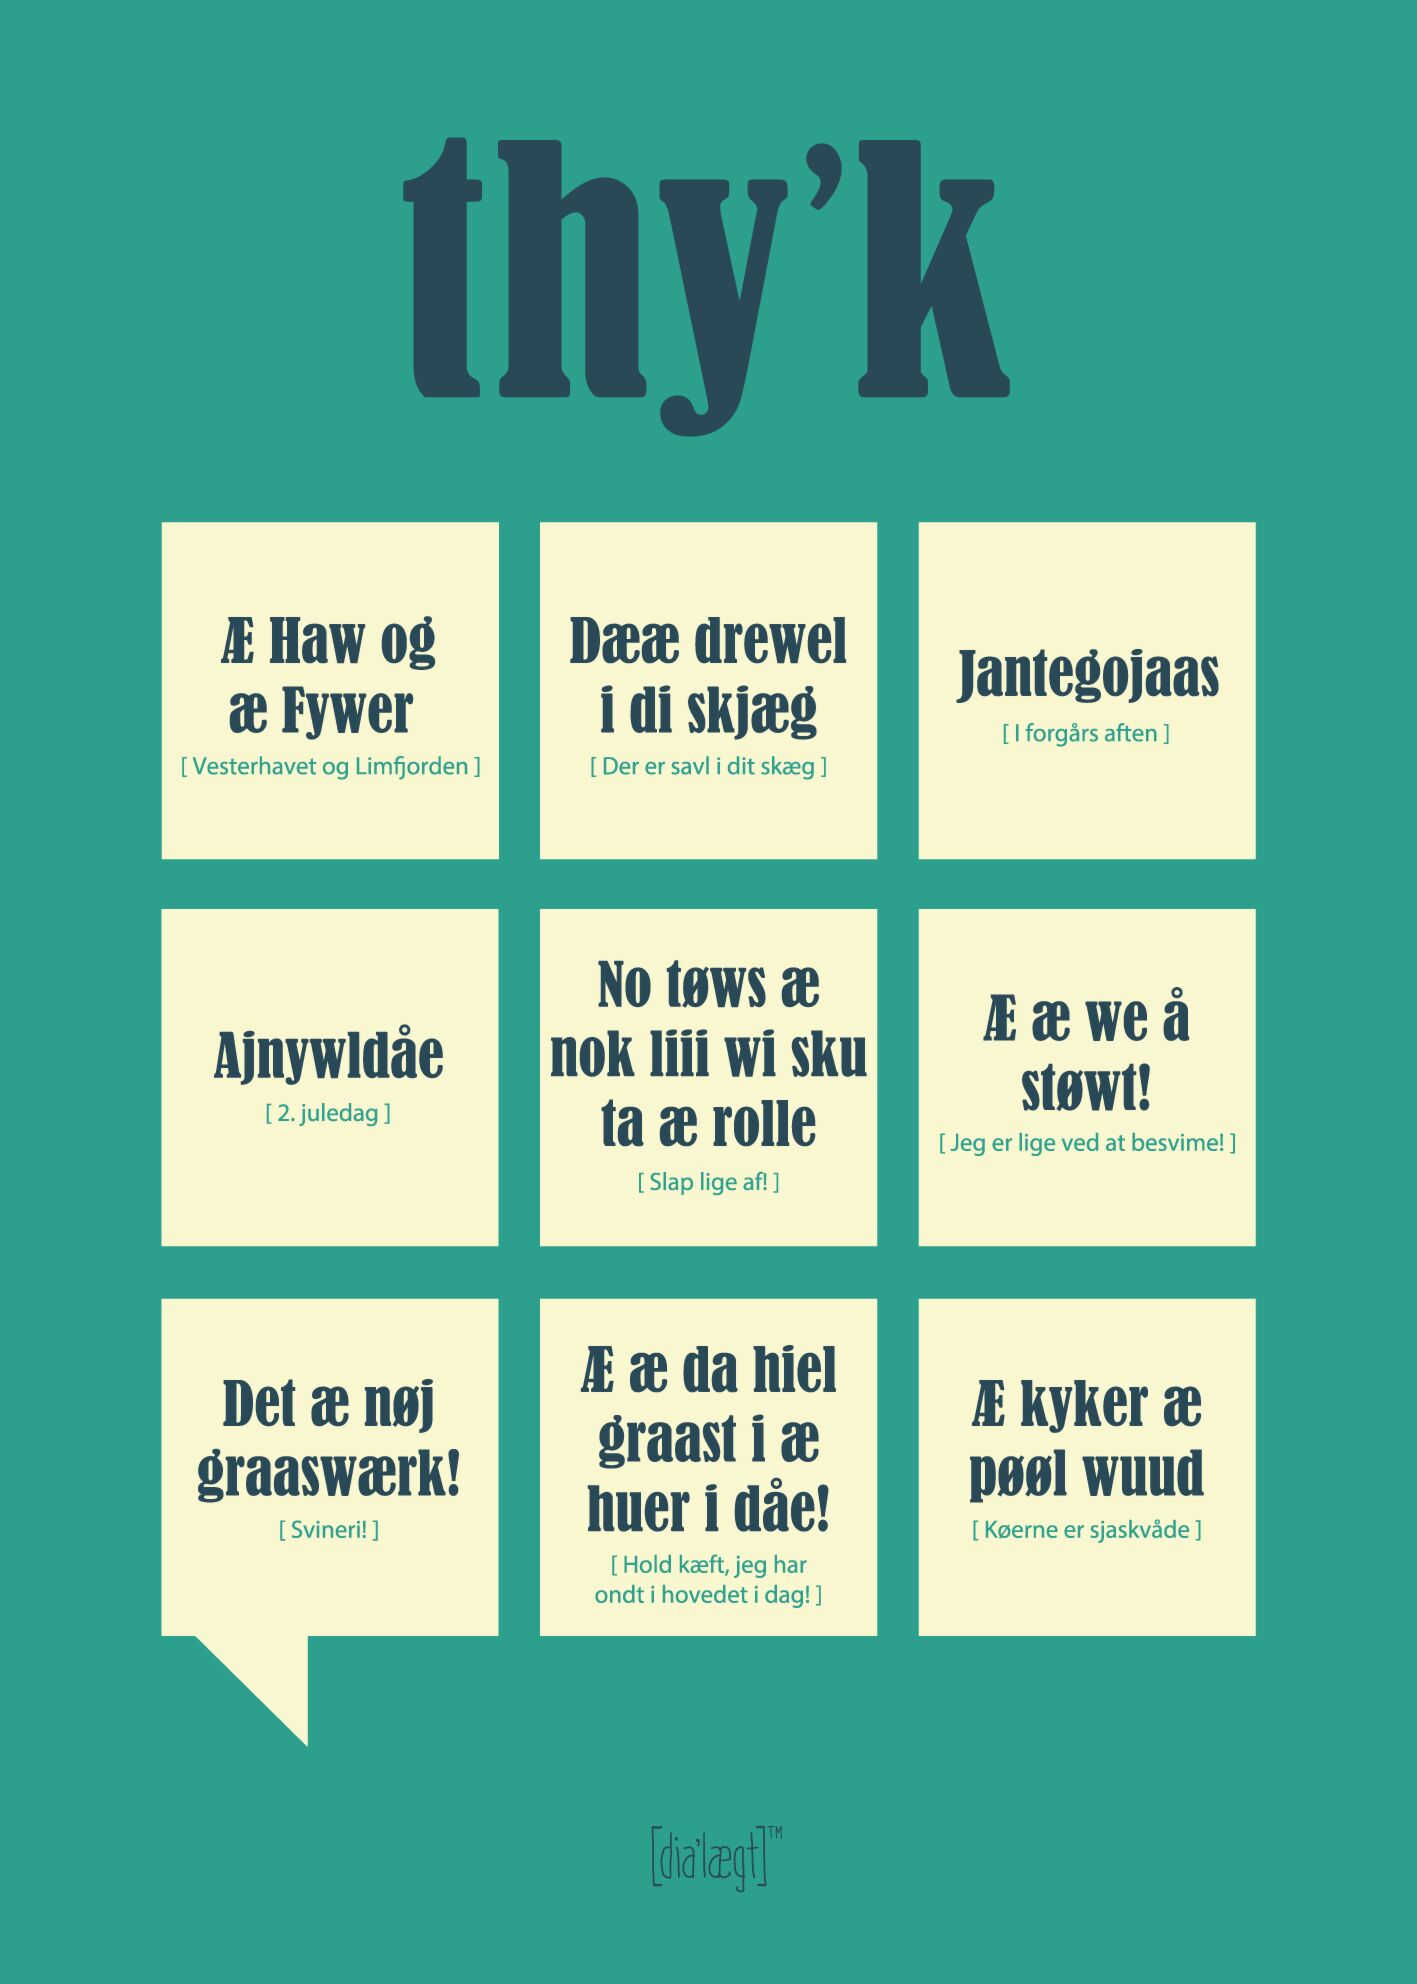 Thy'k - Plakat fra danske med sjove citater og udsagn